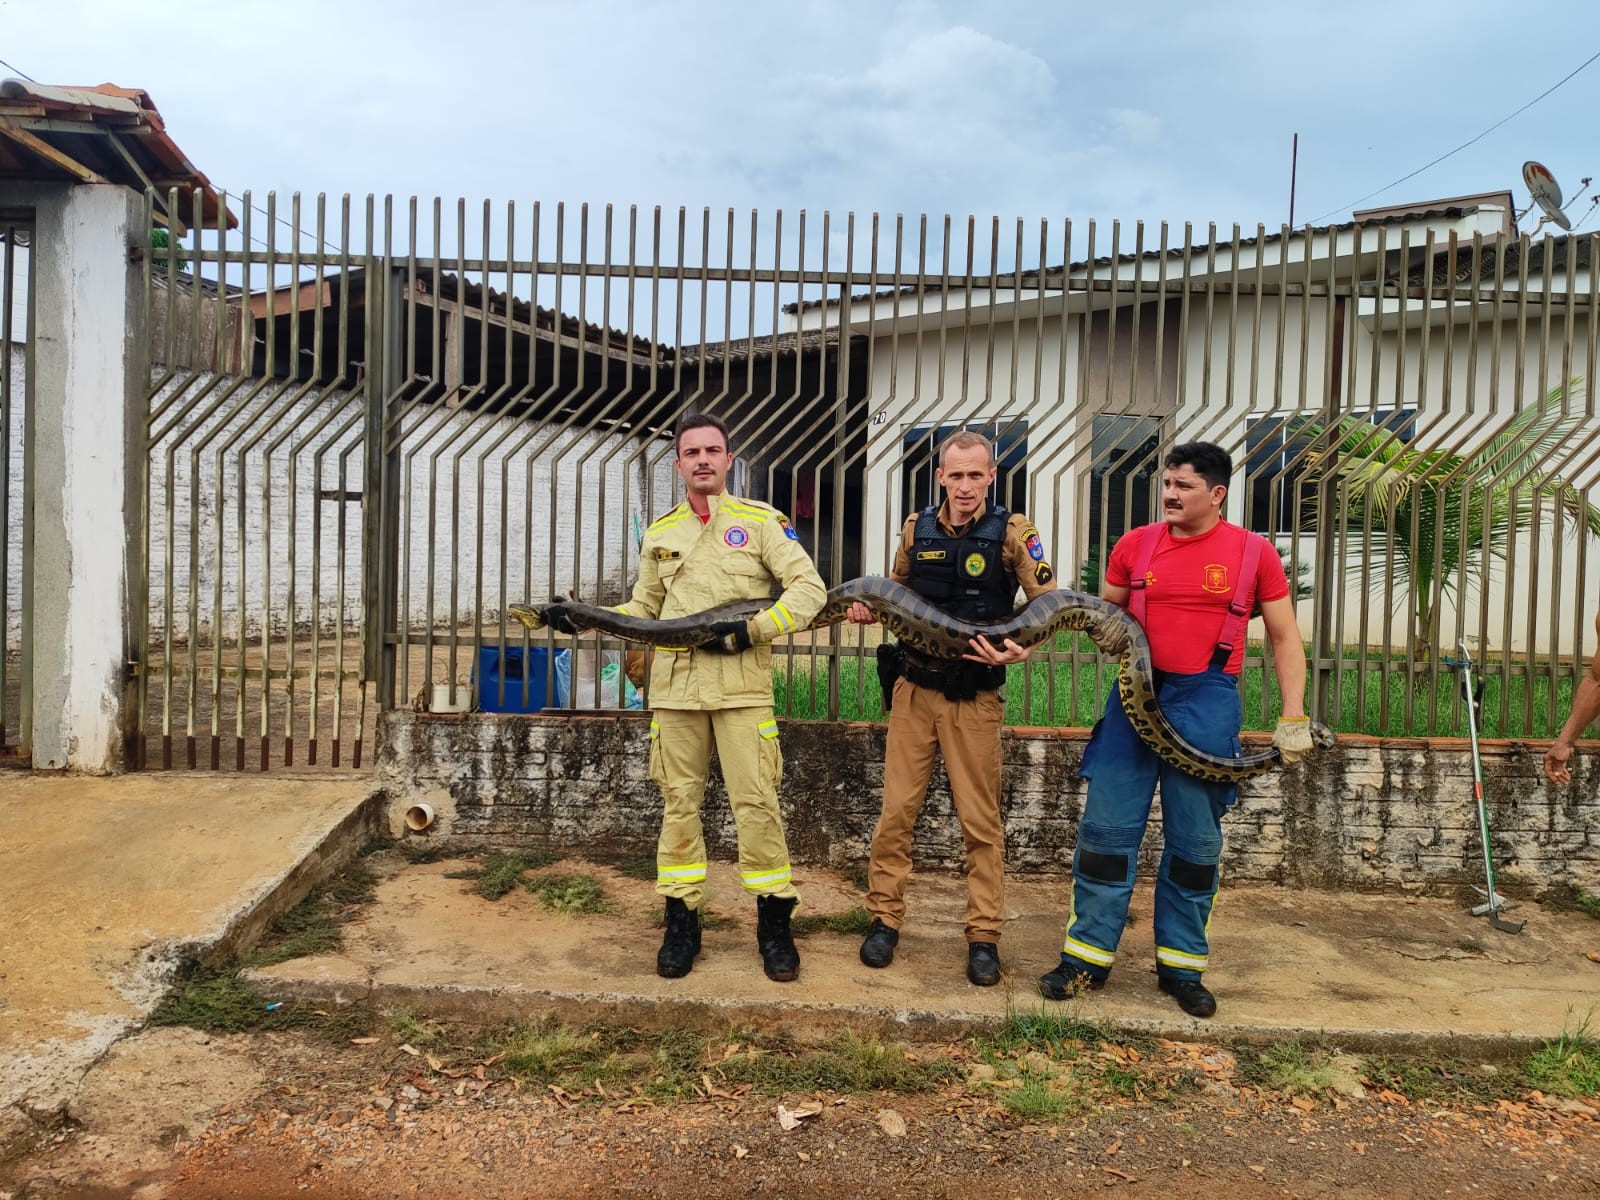 VÍDEO: Sucuri de 4 metros é encontrada no quintal de casa, em Guaíra  